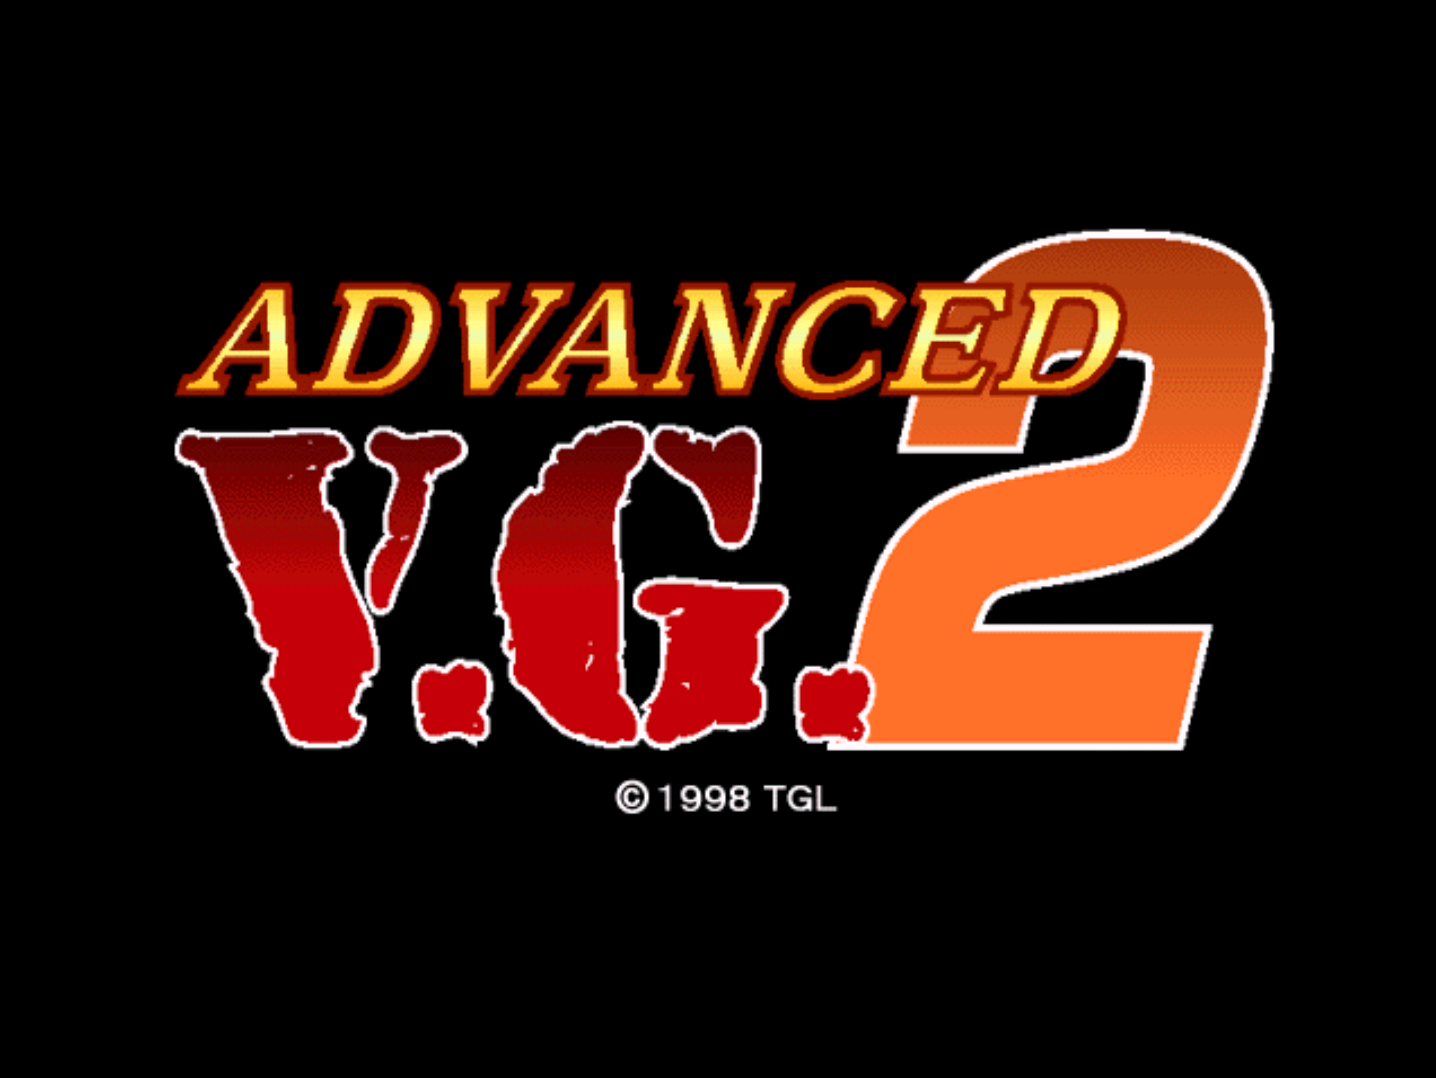 A v g tatar. Advanced v.g.. Advanced VG 2. G'V. A.V.G фото.